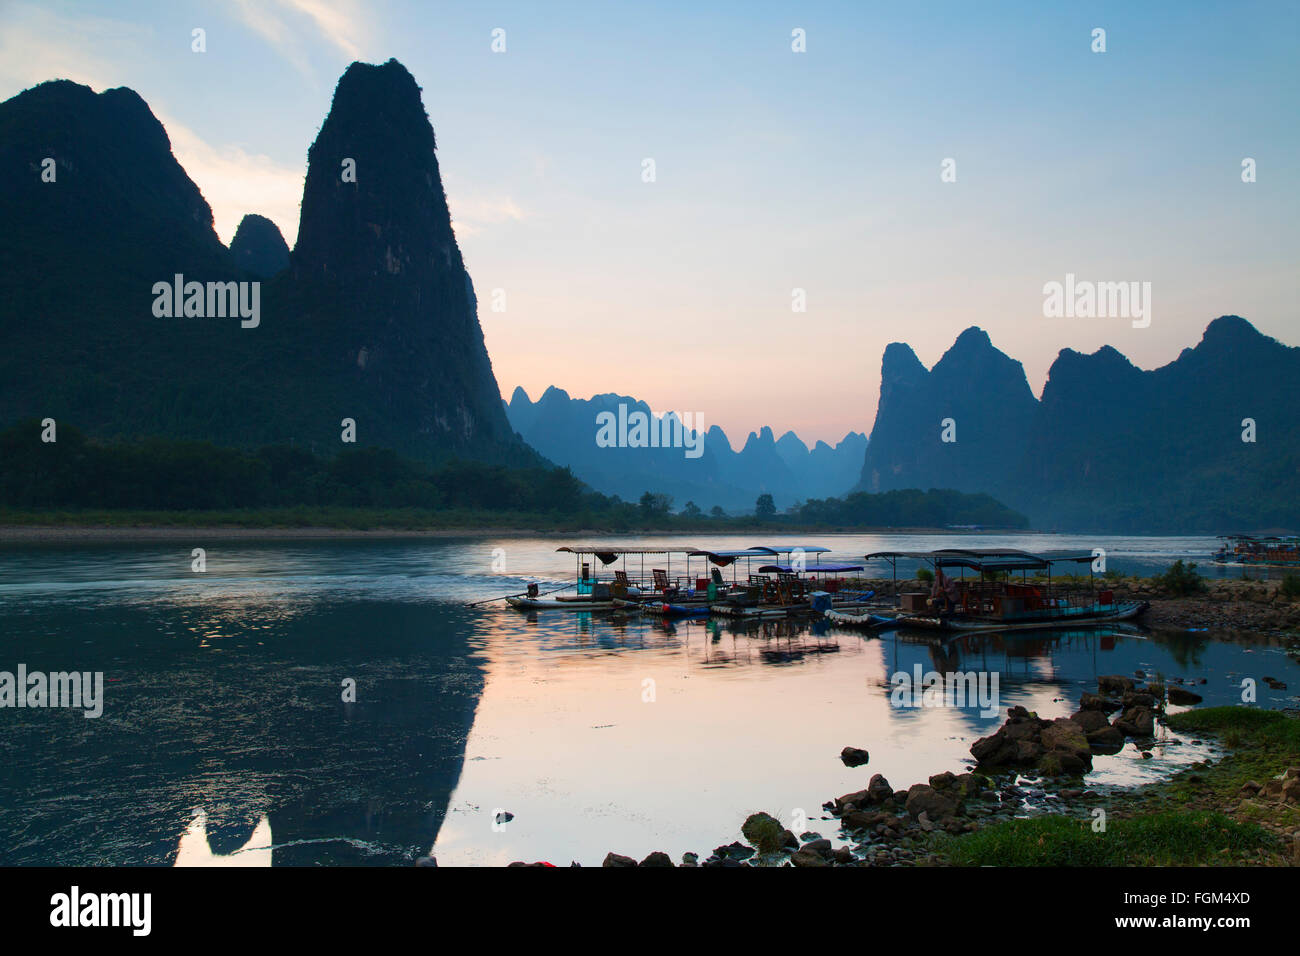 Li River at dusk, Xingping, Yangshuo, Guangxi, China Stock Photo